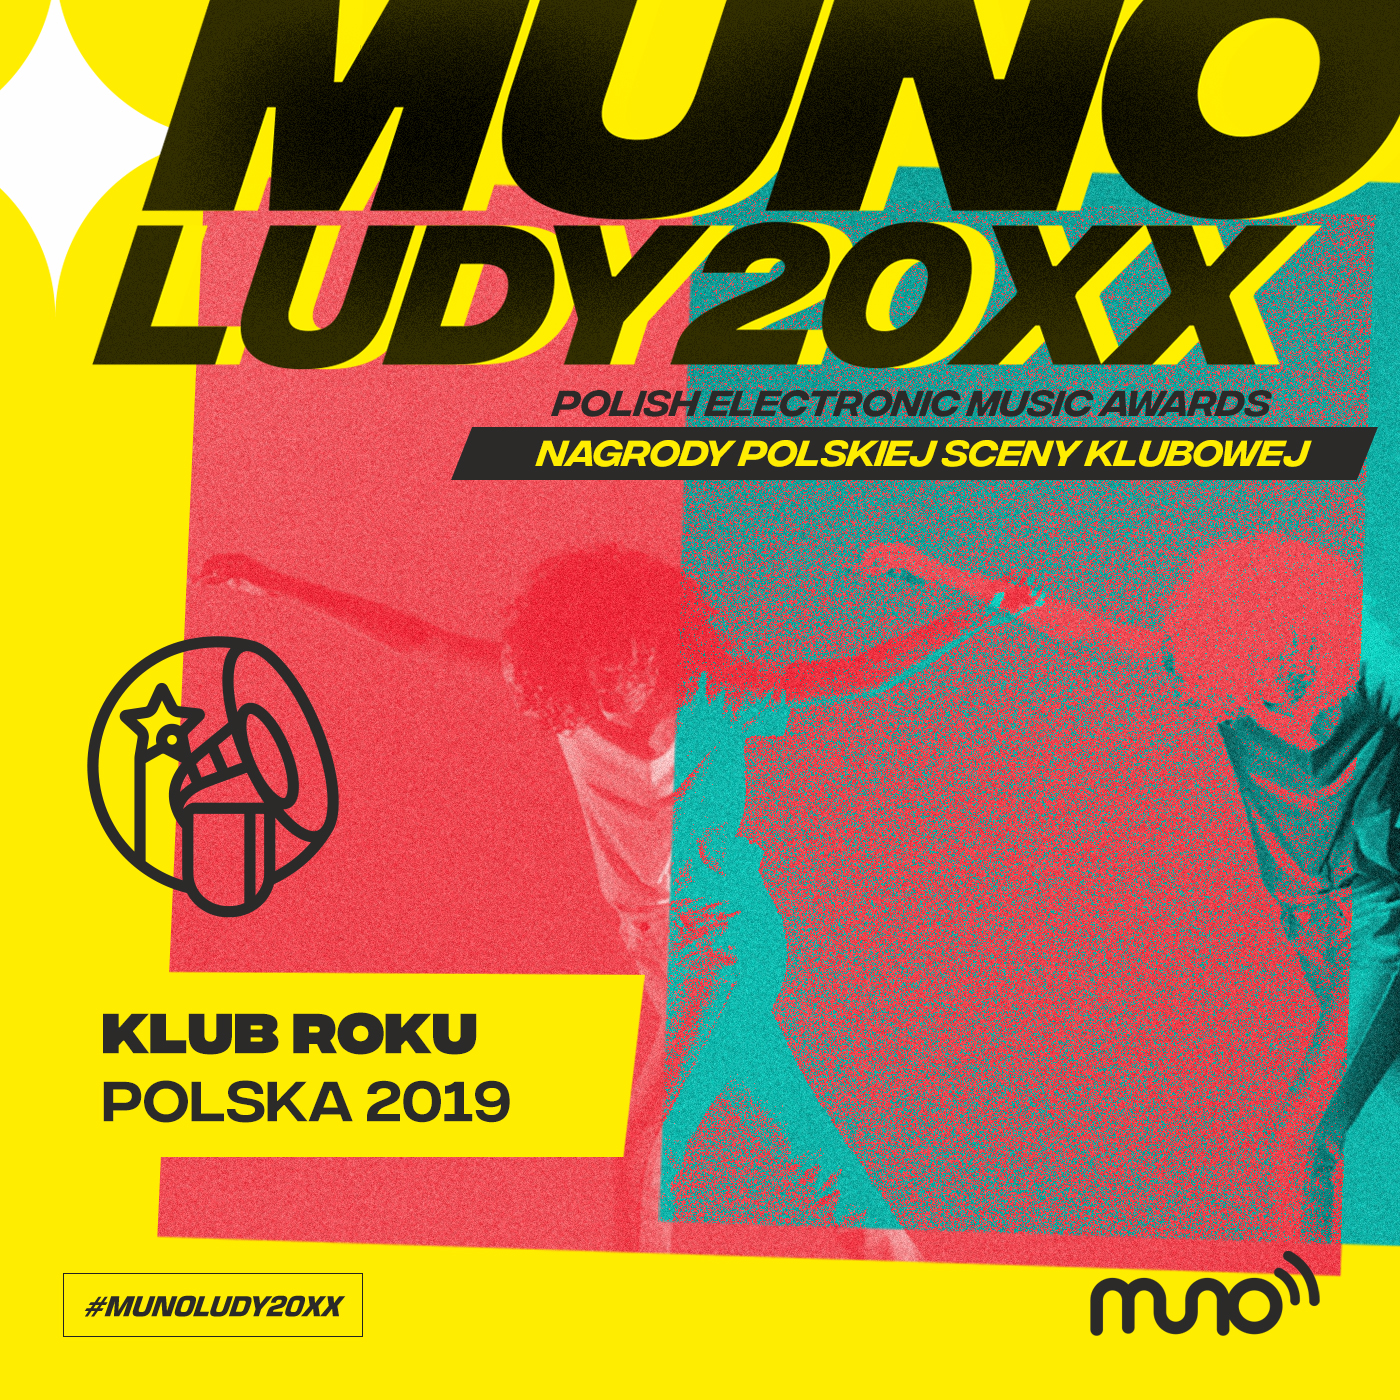 Munoludy 20XX Klub Roku Polska 2019